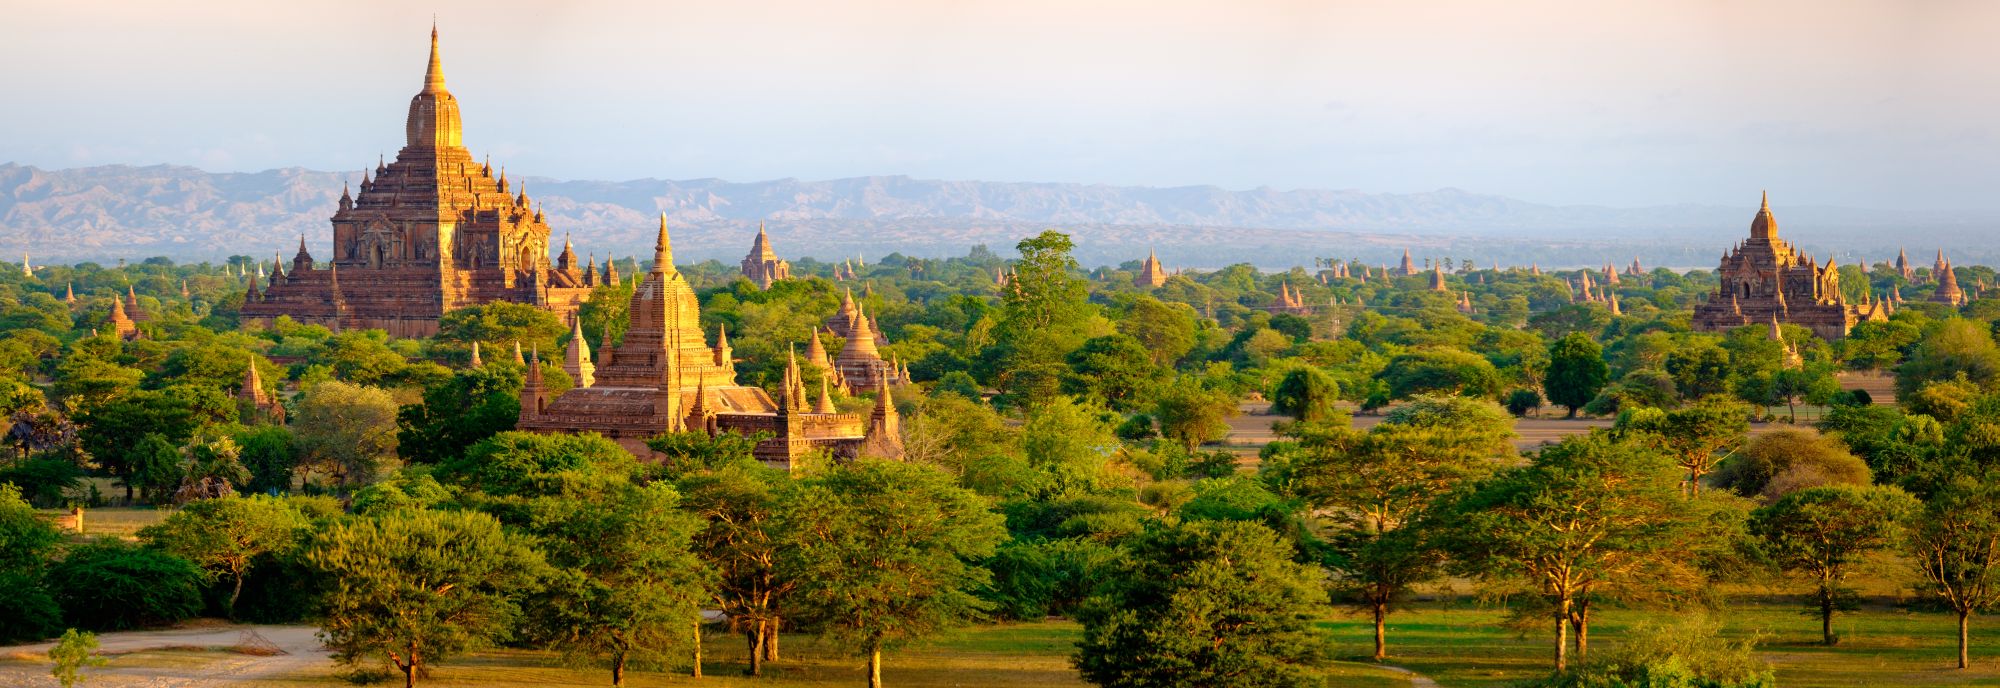 Myanmar Bagan panorama